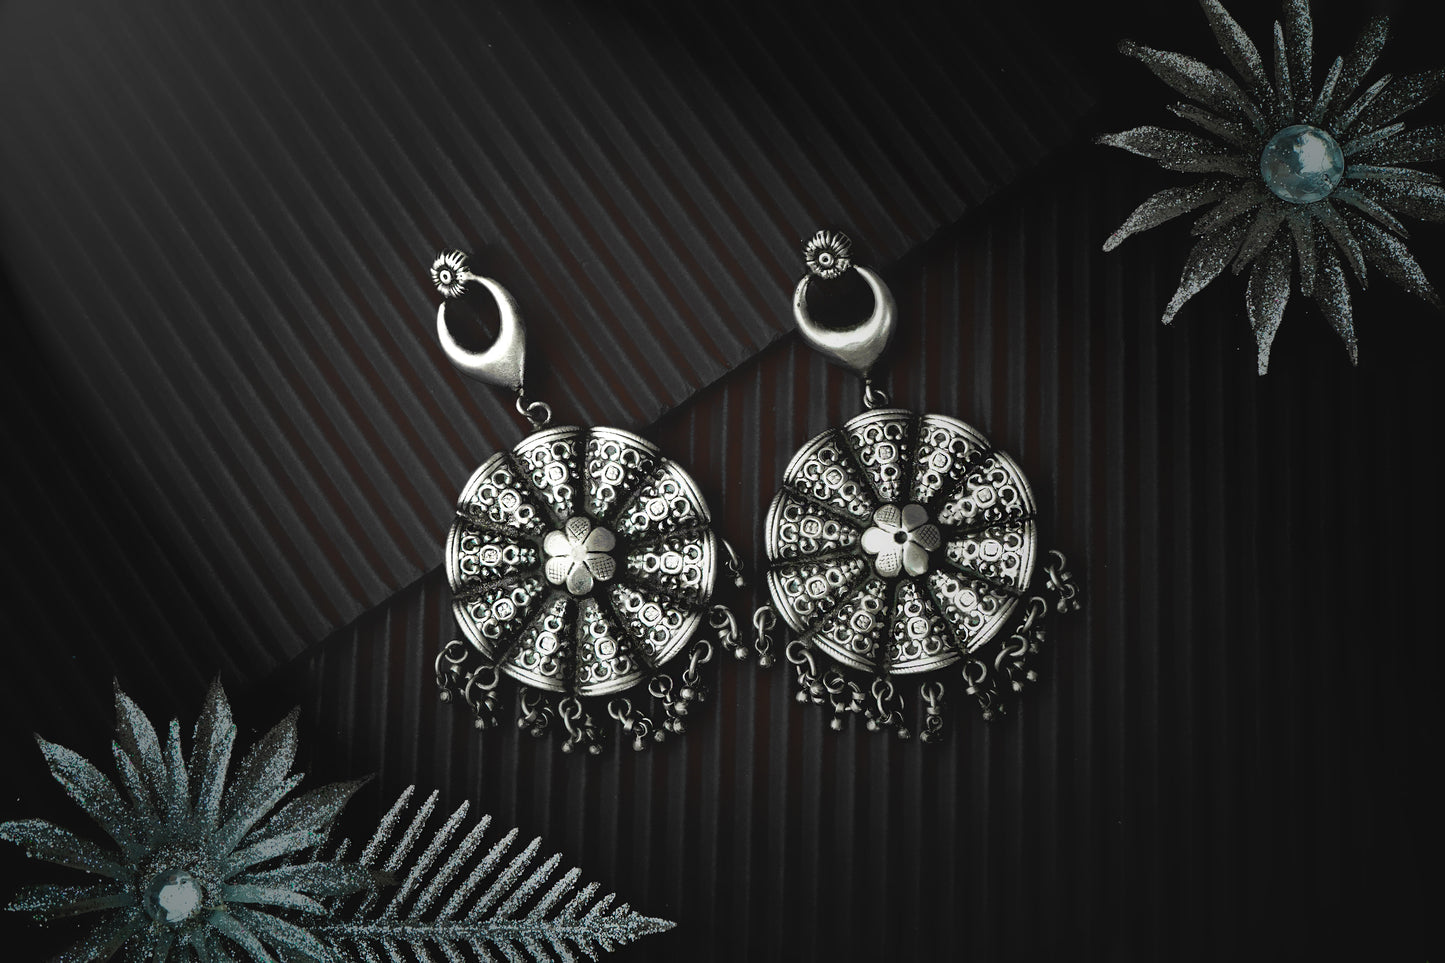 Silver Floral Rawa Earrings with Ghungroos - Neeta Boochra Jewellery